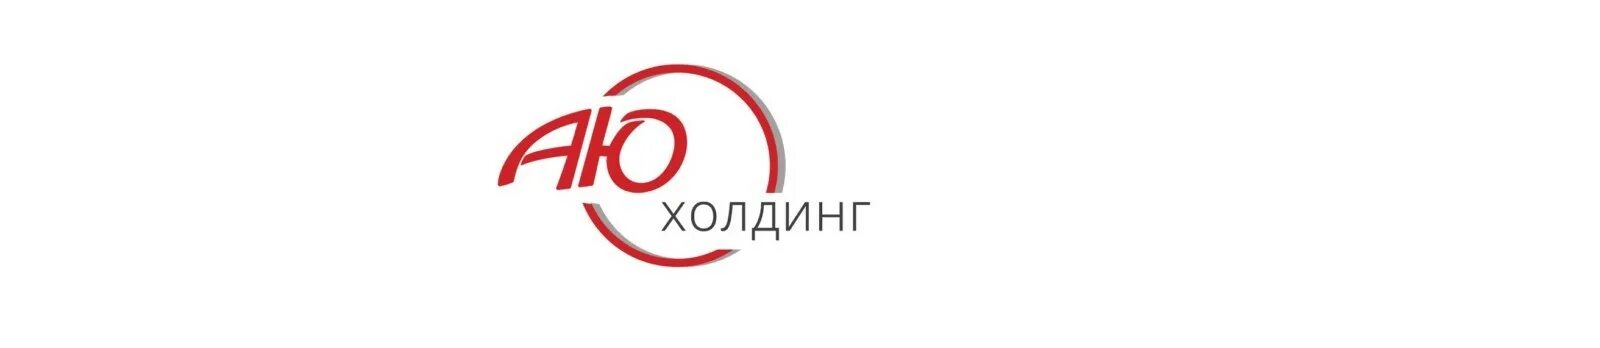 Аю лого. Аю Холдинг. Аю Холдинг в Бишкеке. Логотип холдинга. Компания Аю продукция.